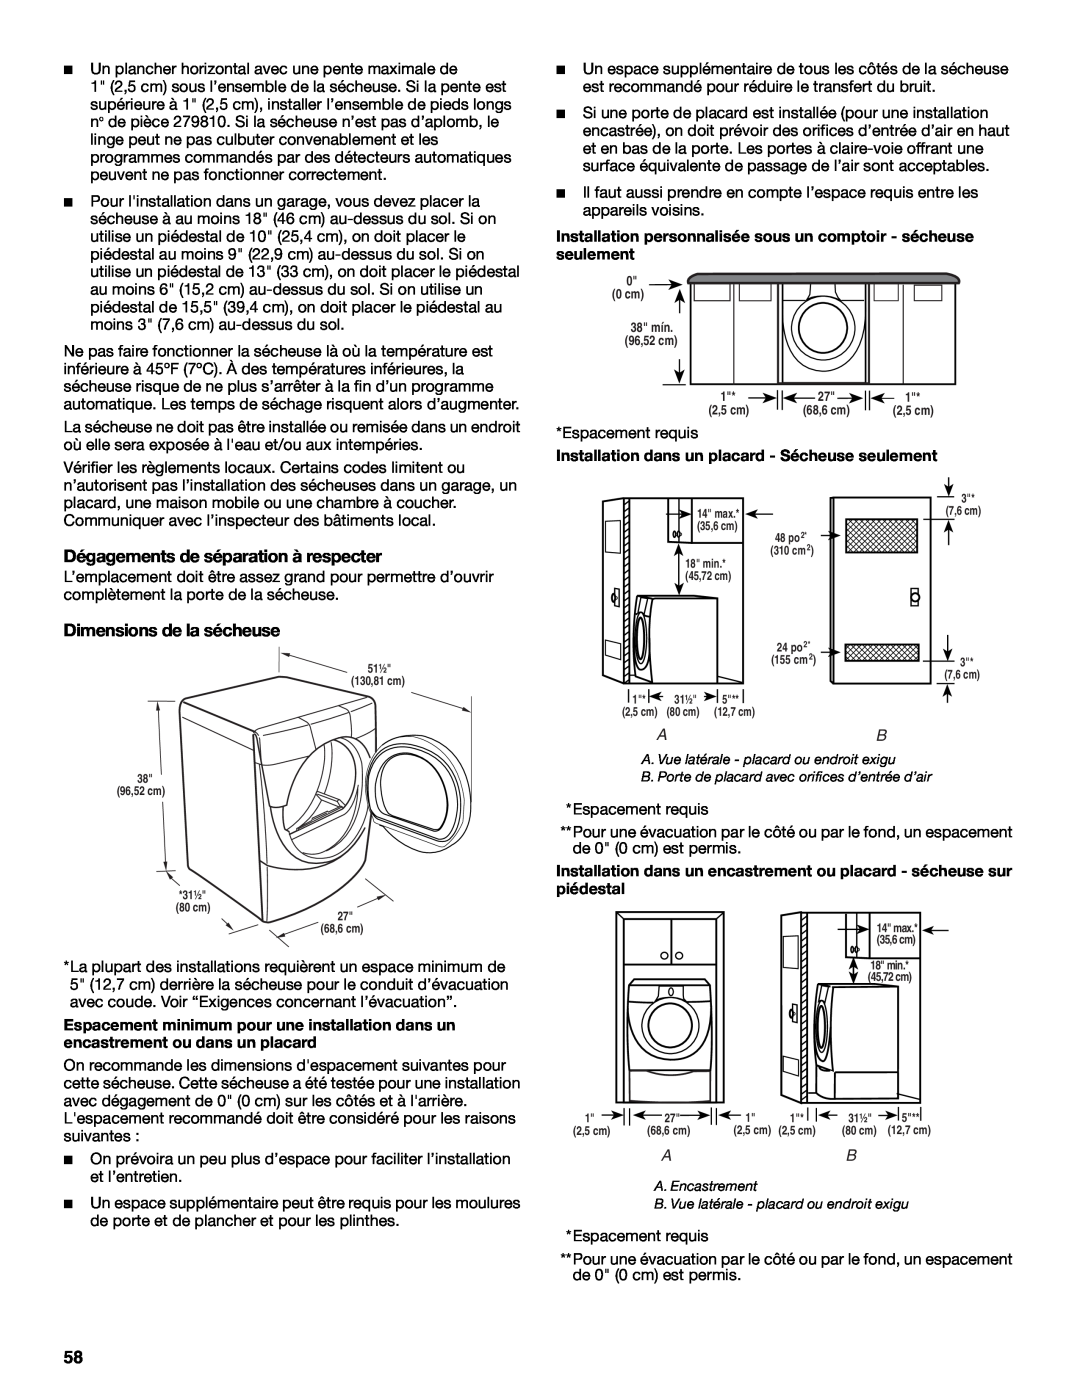 Maytag W10099070 manual Dégagements de séparation à respecter, Dimensions de la sécheuse 